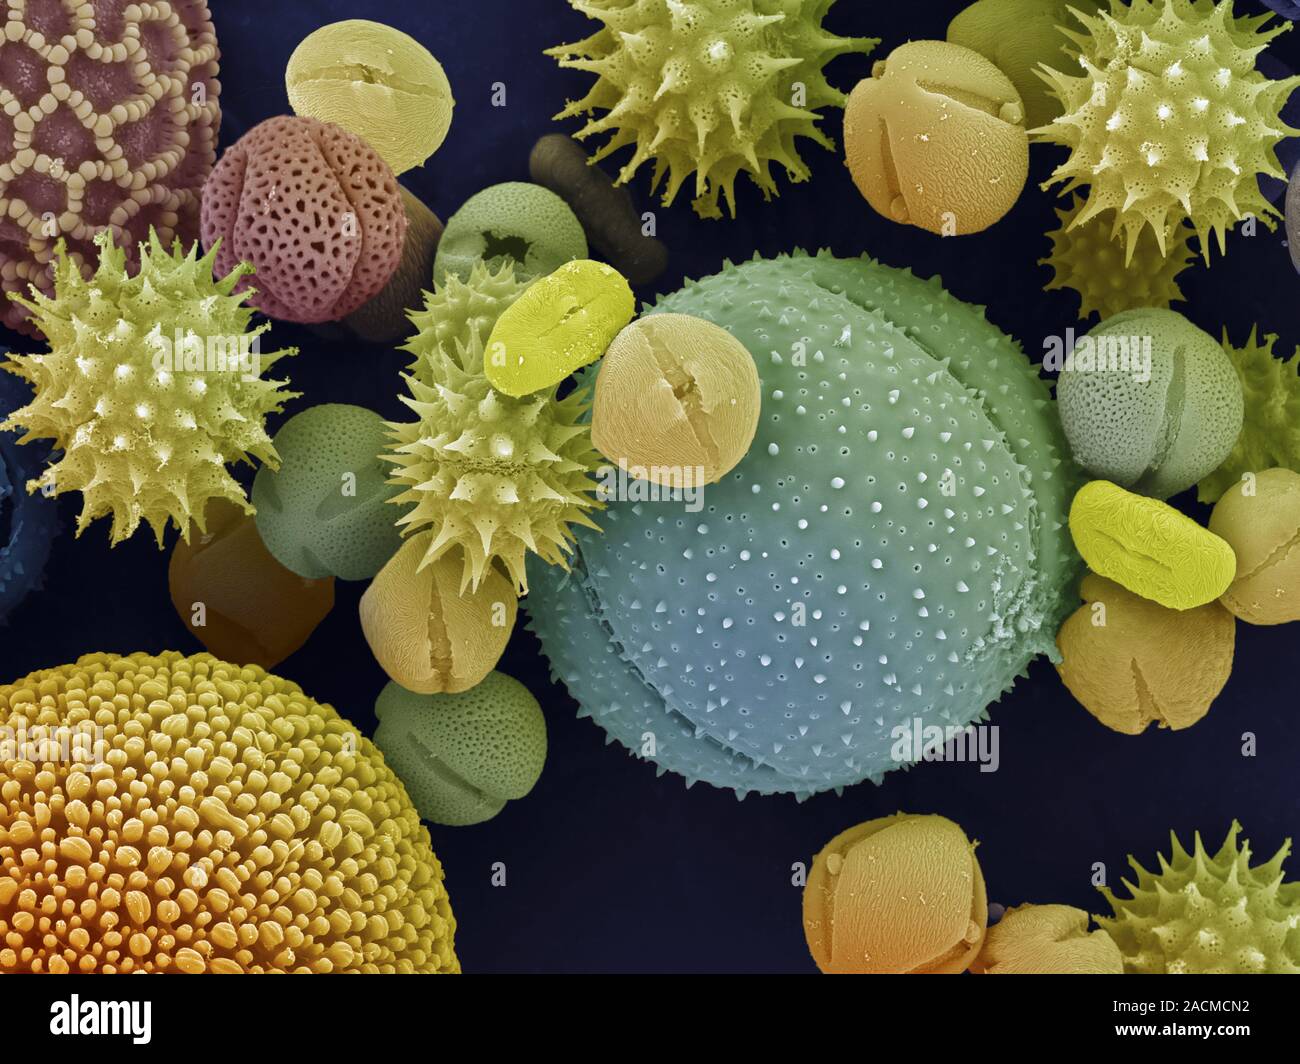 Микробио. Пыльцевые зерна под микроскопом. Пыльца цветковых растений под микроскопом. Пыльца покрытосеменных под микроскопом. Пыльца микроскопия палинология.